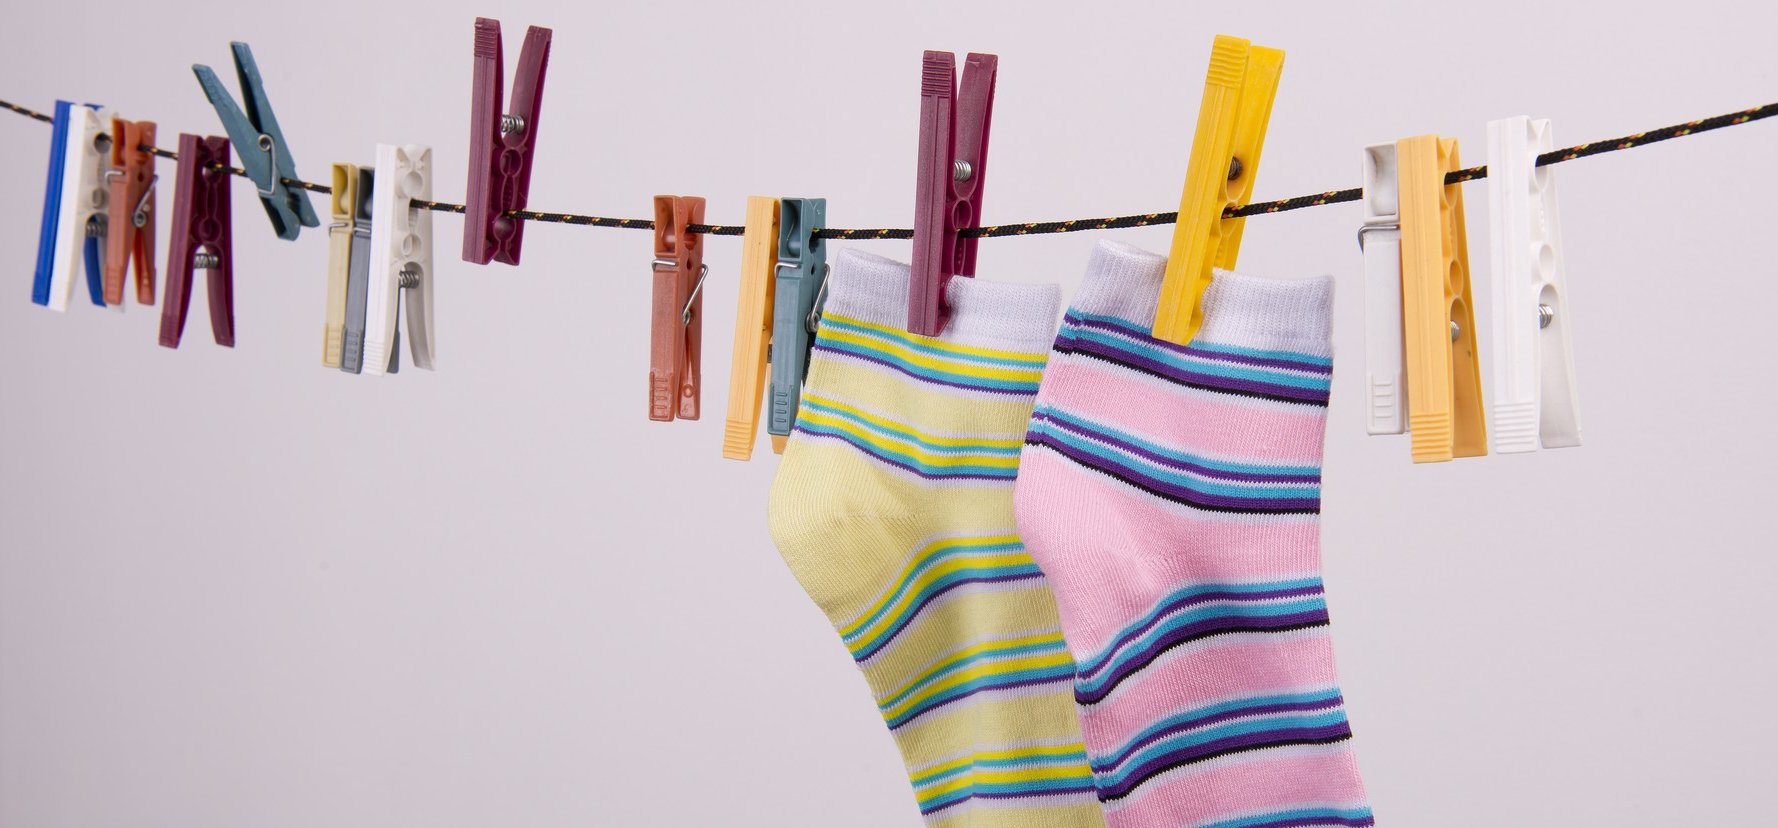 Egyszerű módszerrel tarthatók párban a zoknik mosás közben – így kerüld el az időpocsékoló keresgélést!